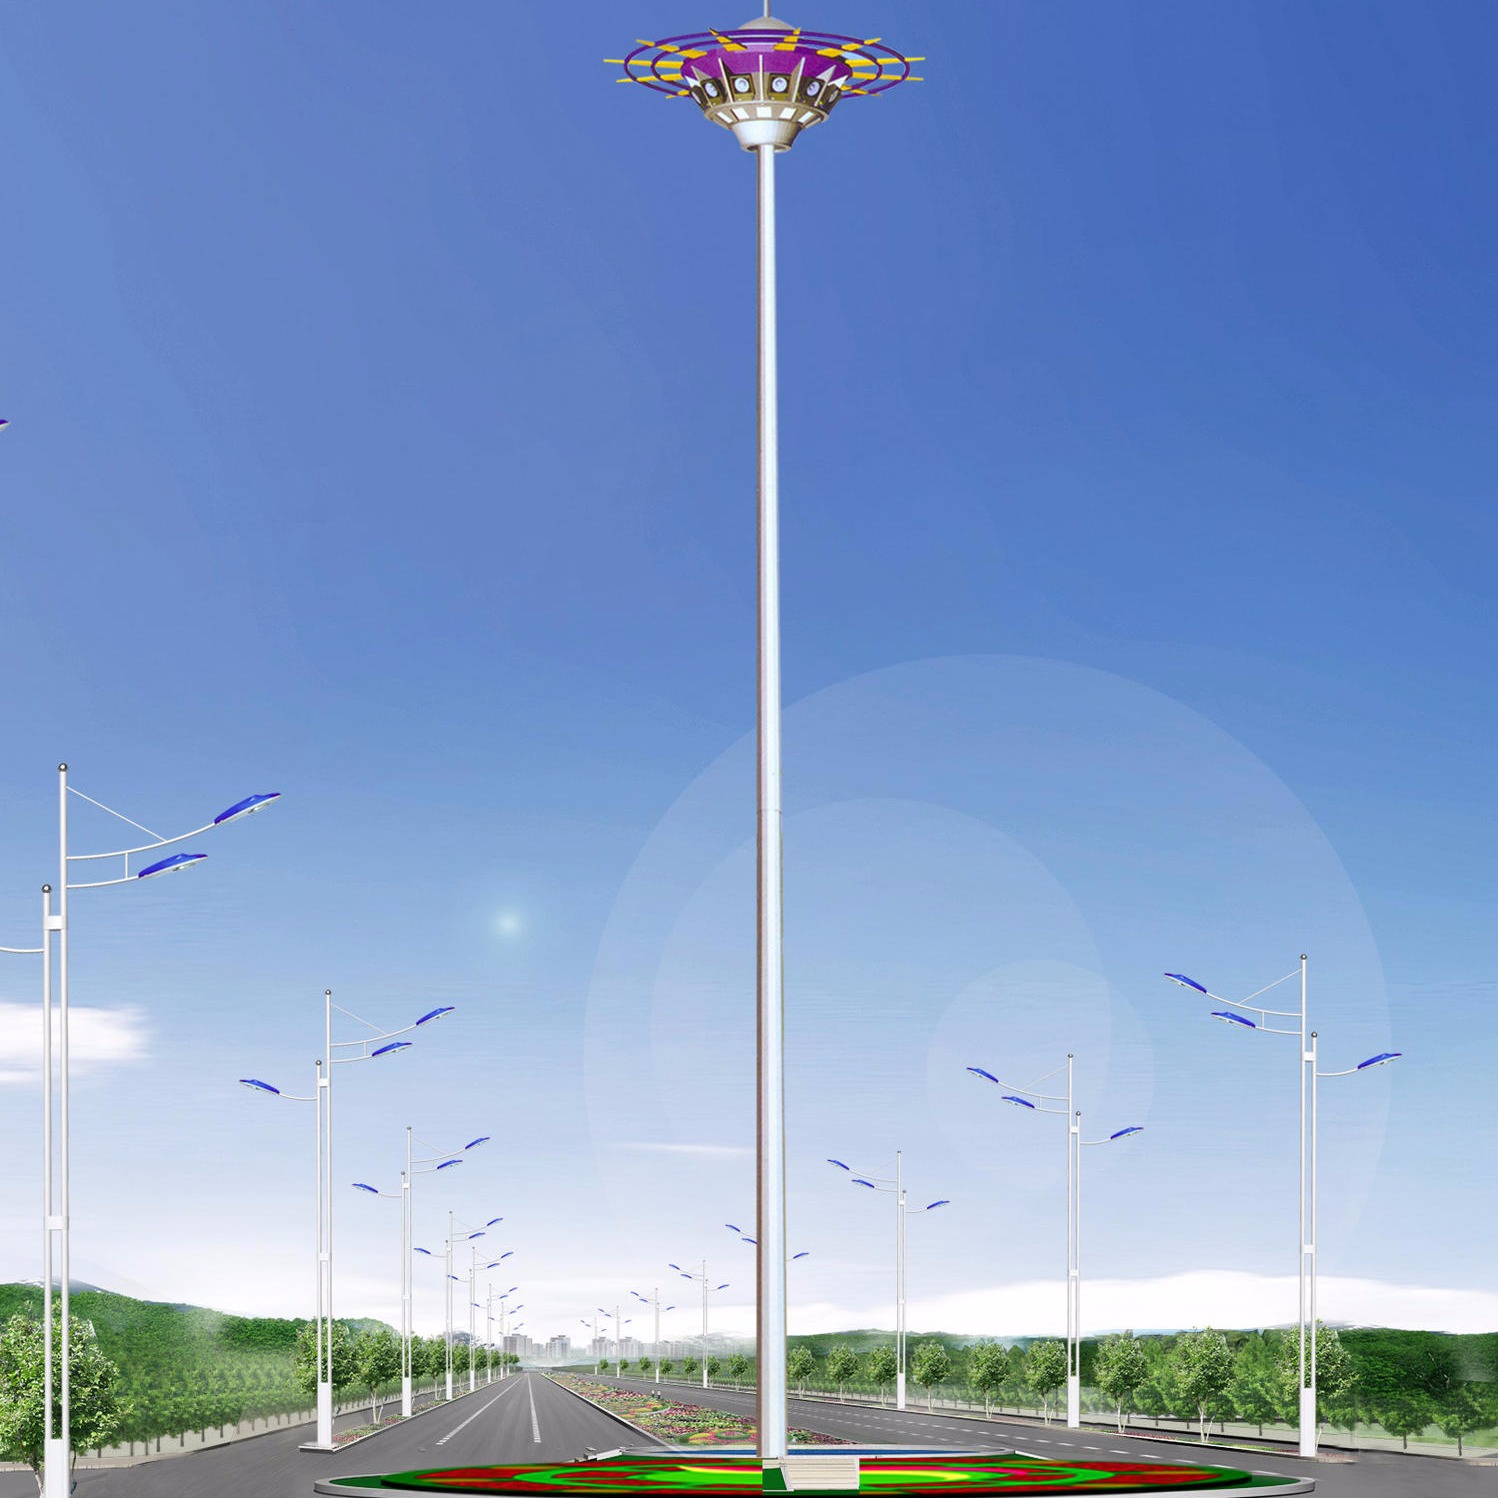 专业led高杆灯厂家 贵州高杆灯厂家 20米高杆灯 定制高杆灯长度